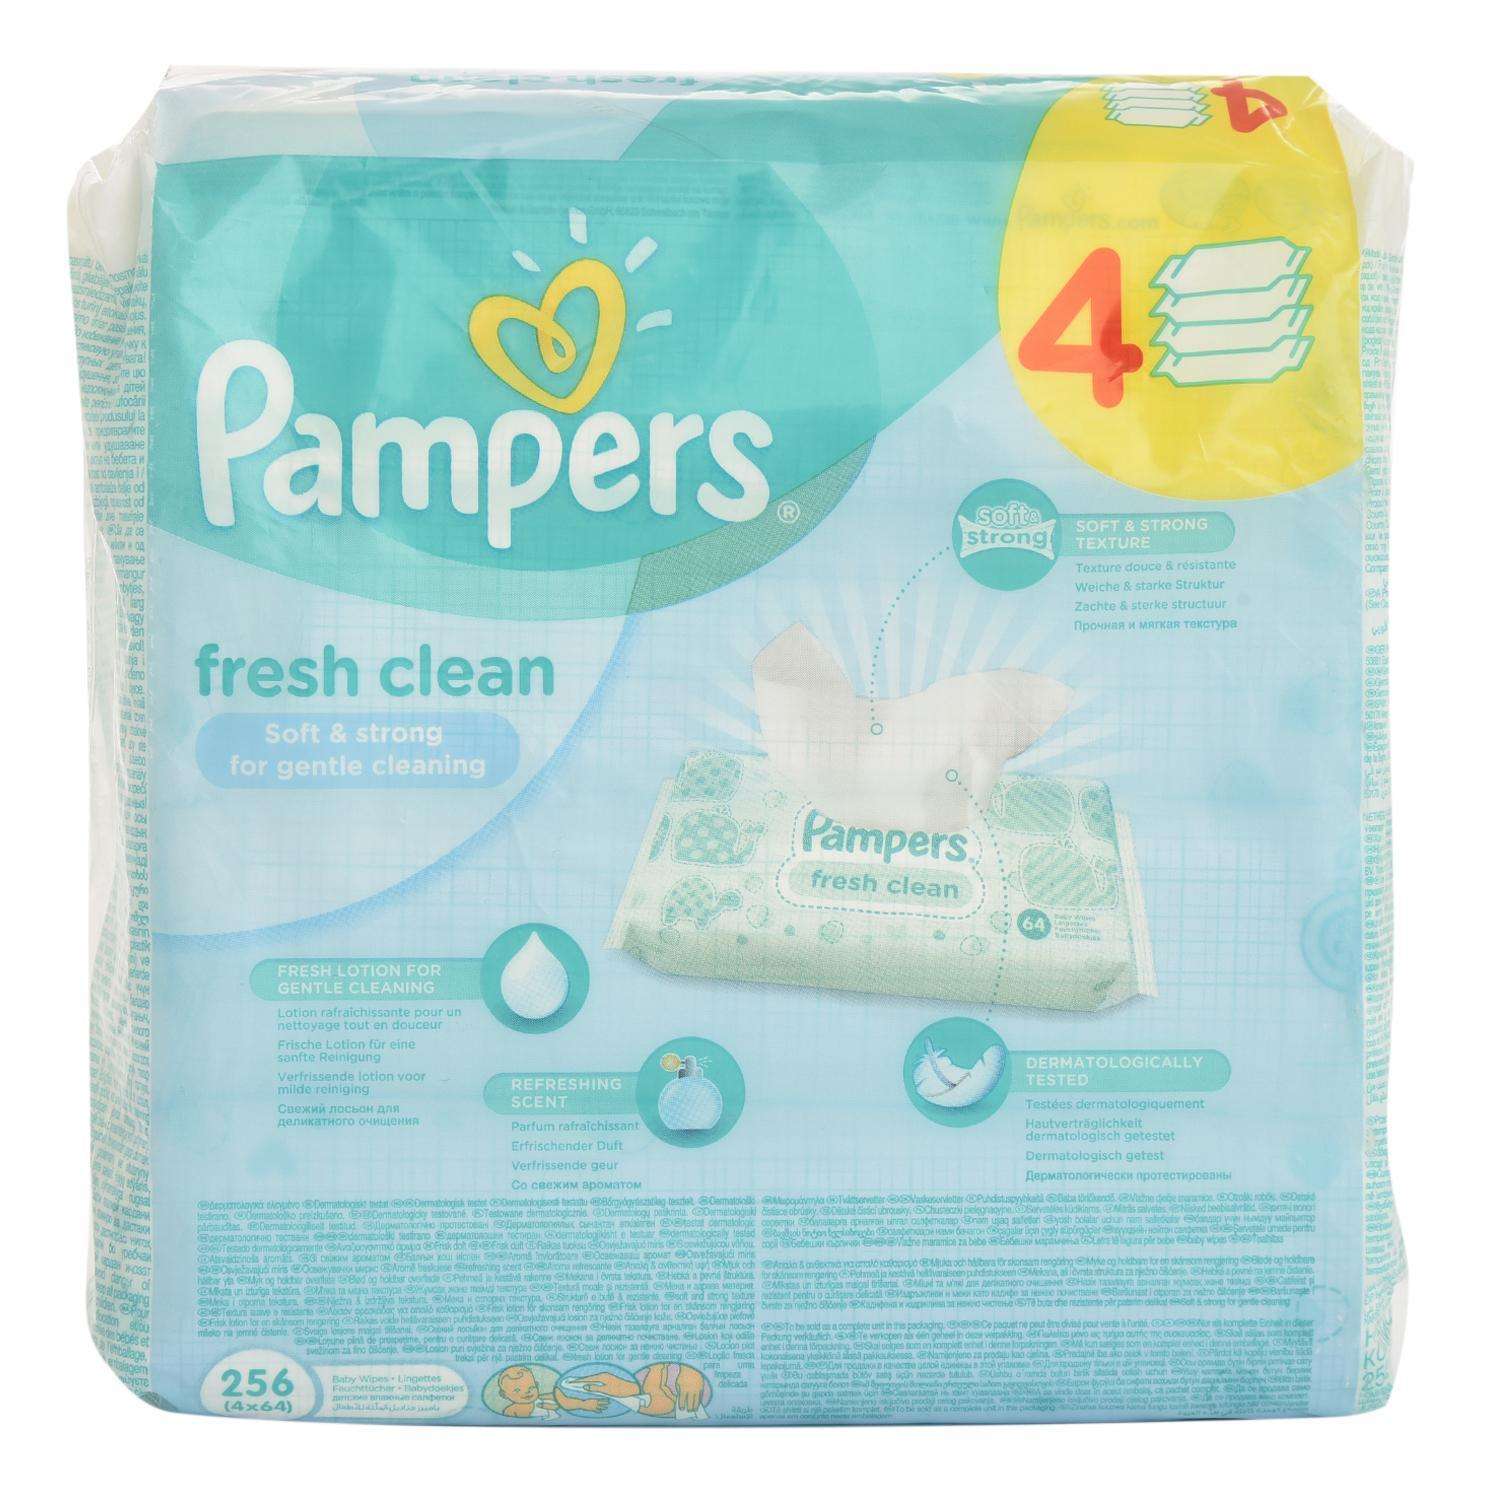 Салфетки Pampers Fresh Clean влажные сменный блок 256 штук - фото 11